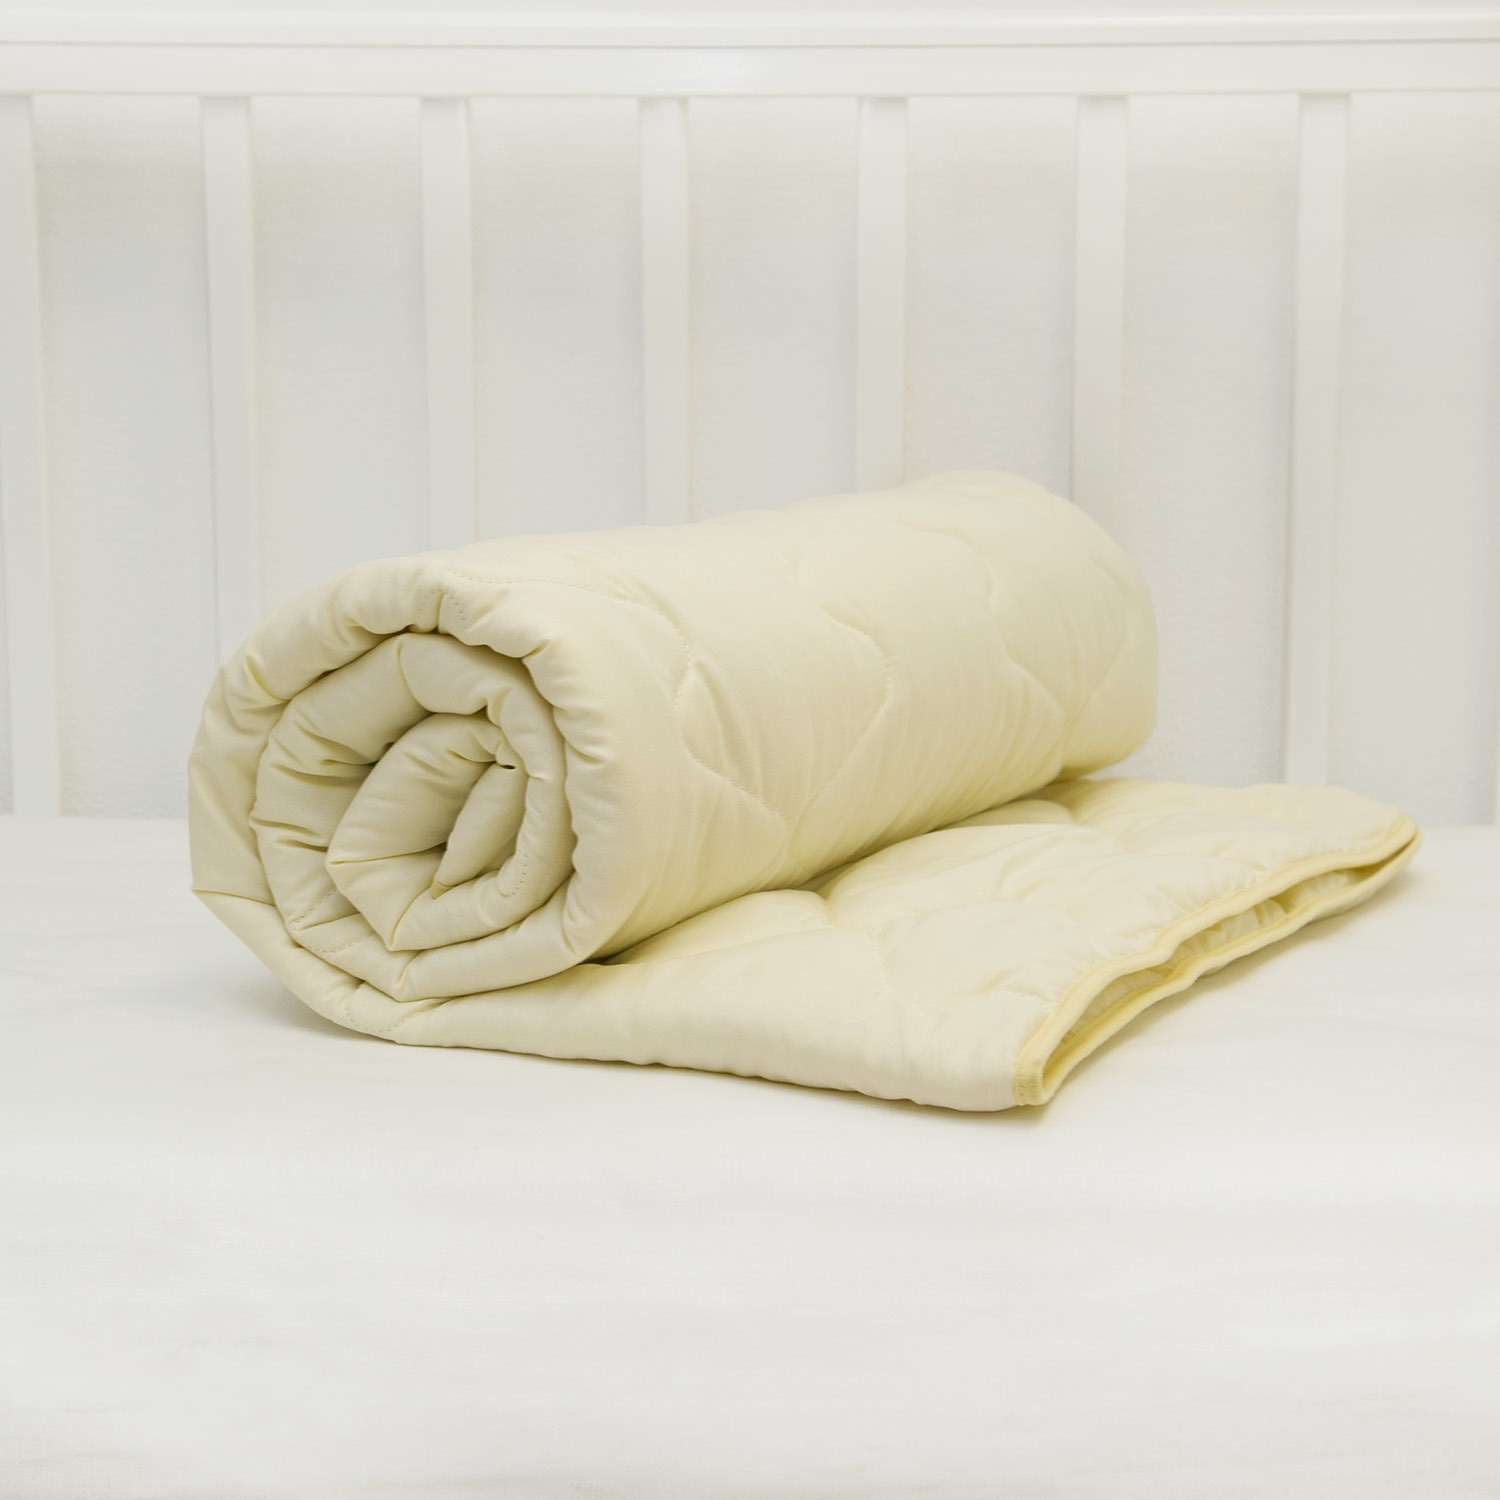 Одеяло стеганое Споки Ноки Q054143 - фото 4